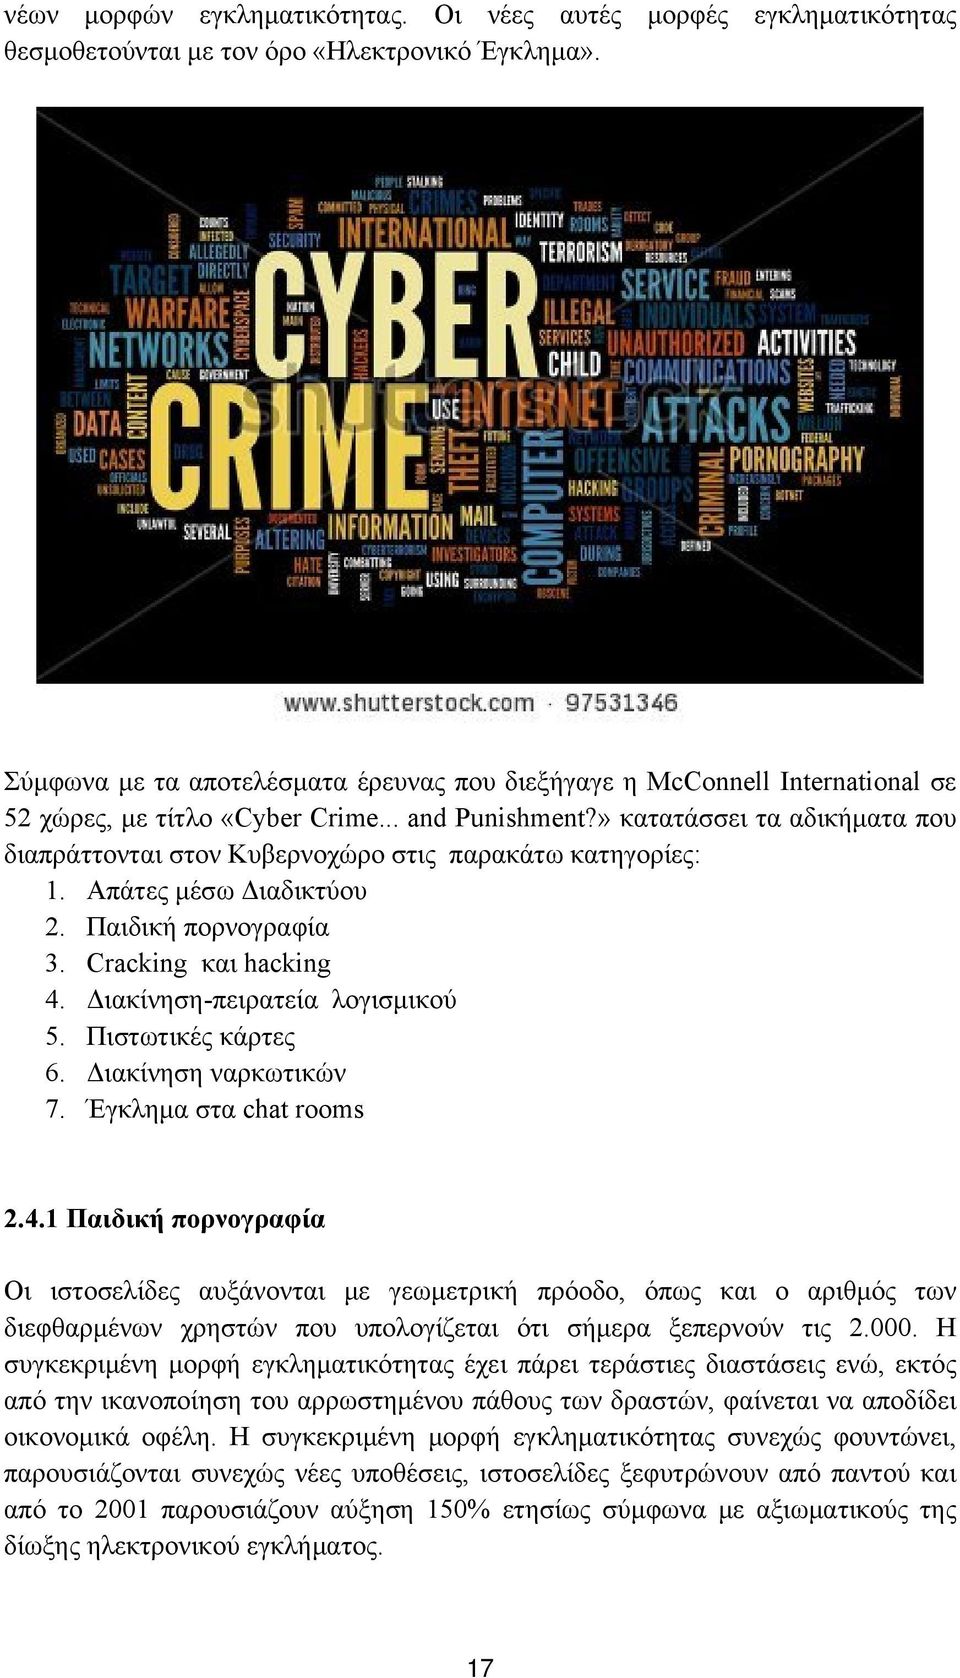 » κατατάσσει τα αδικήματα που διαπράττονται στον Κυβερνοχώρο στις παρακάτω κατηγορίες: 1. Απάτες μέσω Διαδικτύου 2. Παιδική πορνογραφία 3. Cracking και hacking 4. Διακίνηση-πειρατεία λογισμικού 5.